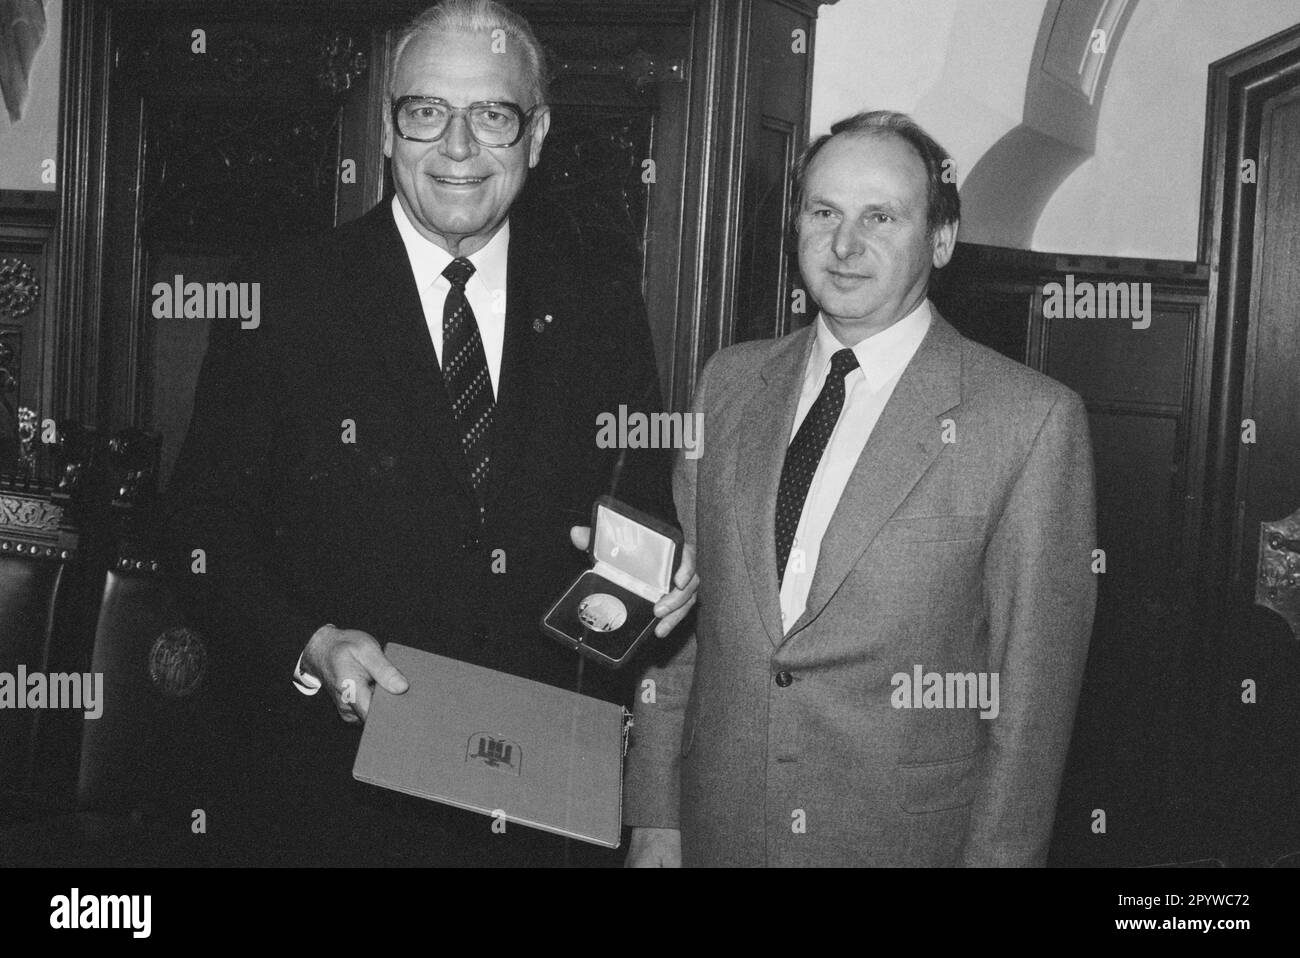 Franz Heubl avec Erich Kiesl, qui remet Heubl la médaille Munich brille. [traduction automatique] Banque D'Images